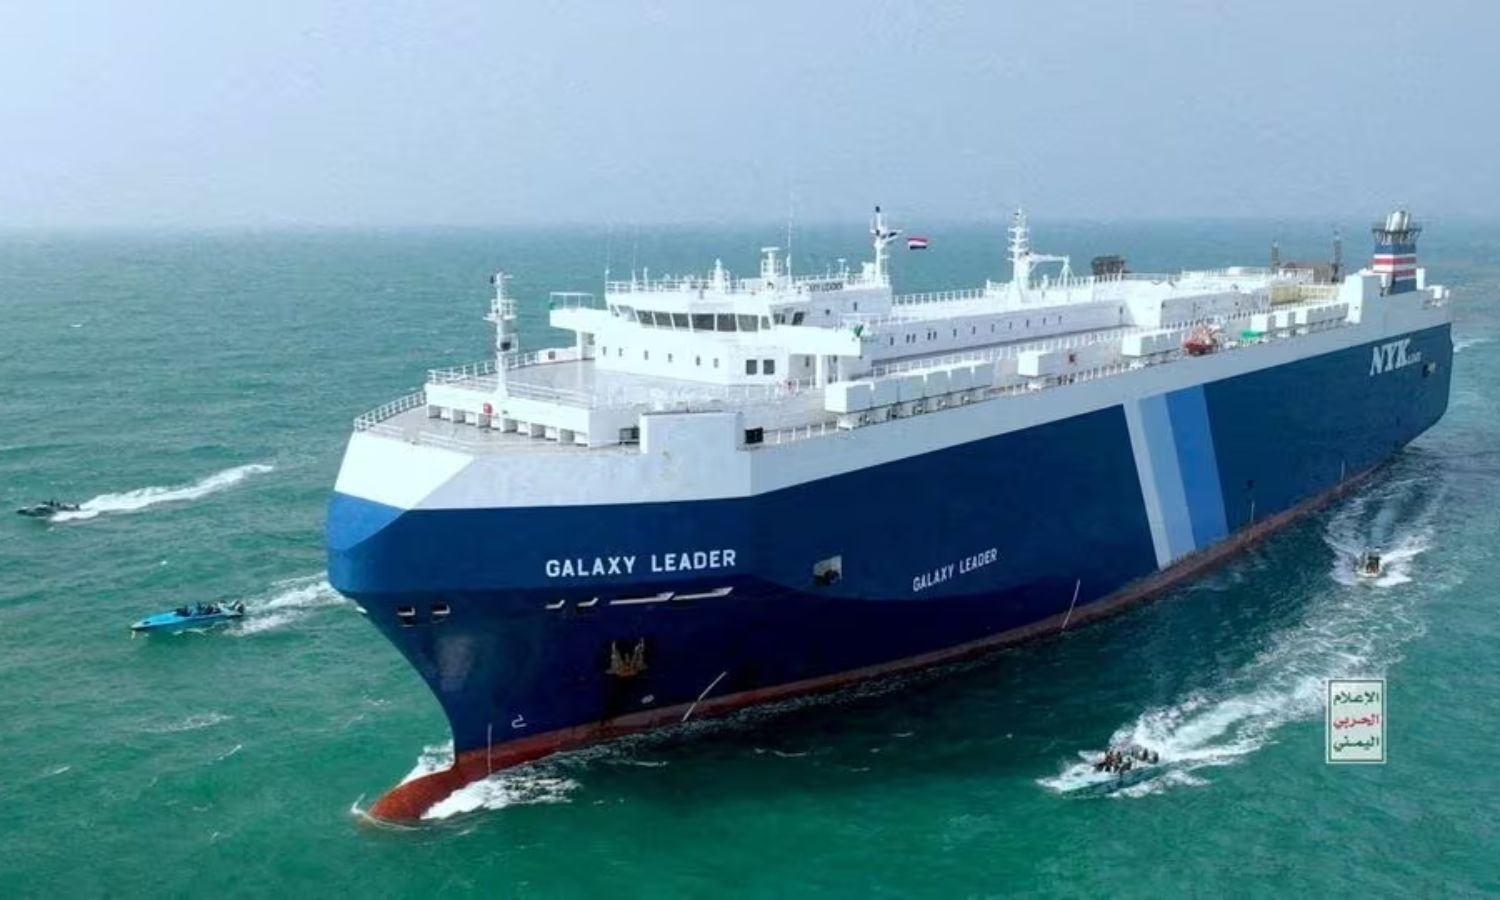 سفينة الشحن "جالاكسي ليدر" ترافقها قوارب الحوثيين في البحر الأحمر- 20 من تشرين الثاني 2023 (رويترز/ الإعلام الحربي اليمني)